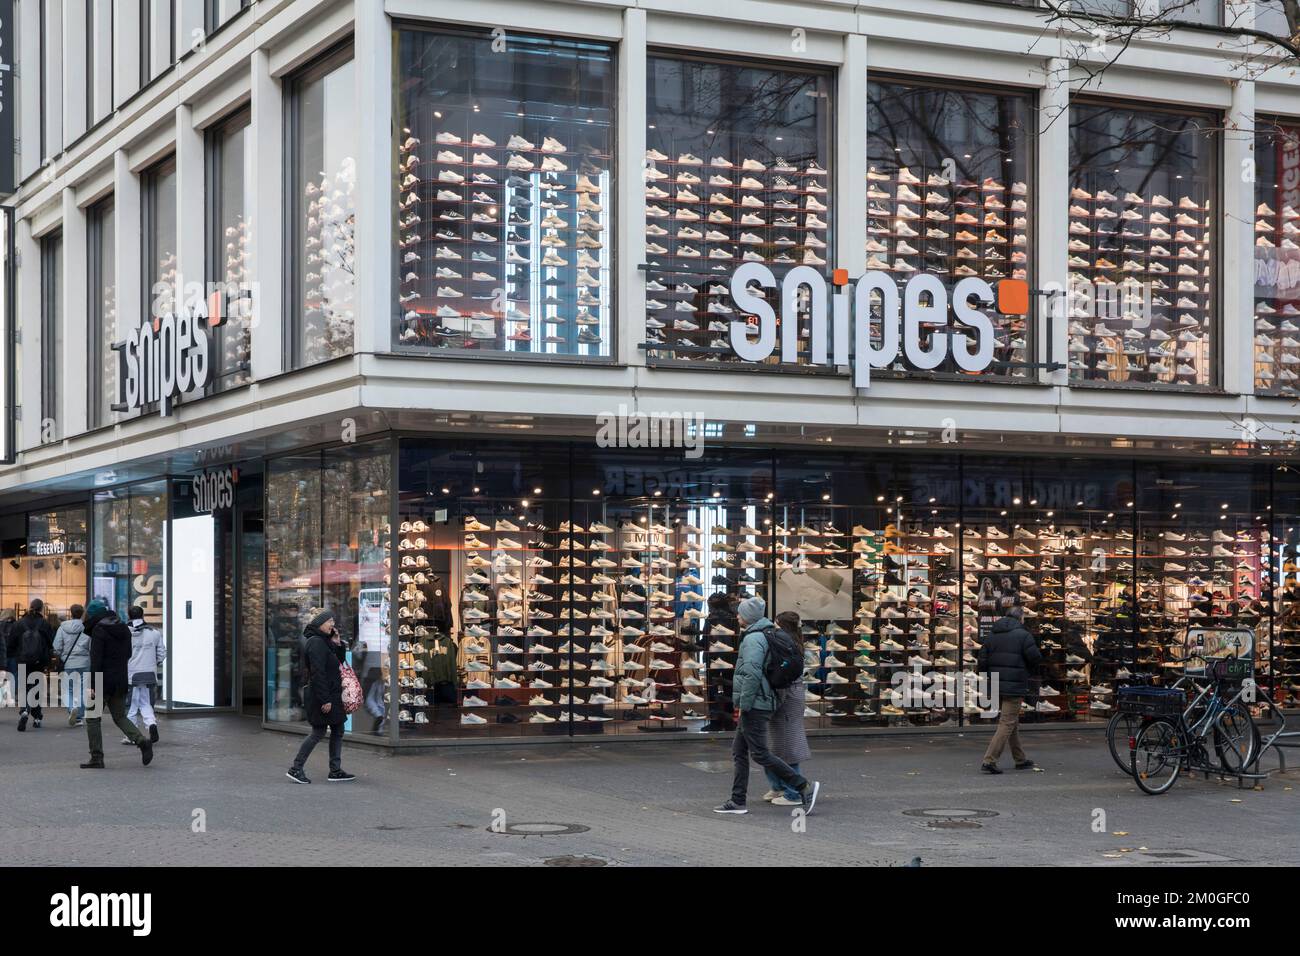 Magasin Snipes sur la rue commerçante Schildergasse, magasin de baskets et de streetwear, Cologne, Allemagne. Snipes Store dans der Fussgaengerzone Schildergass Banque D'Images